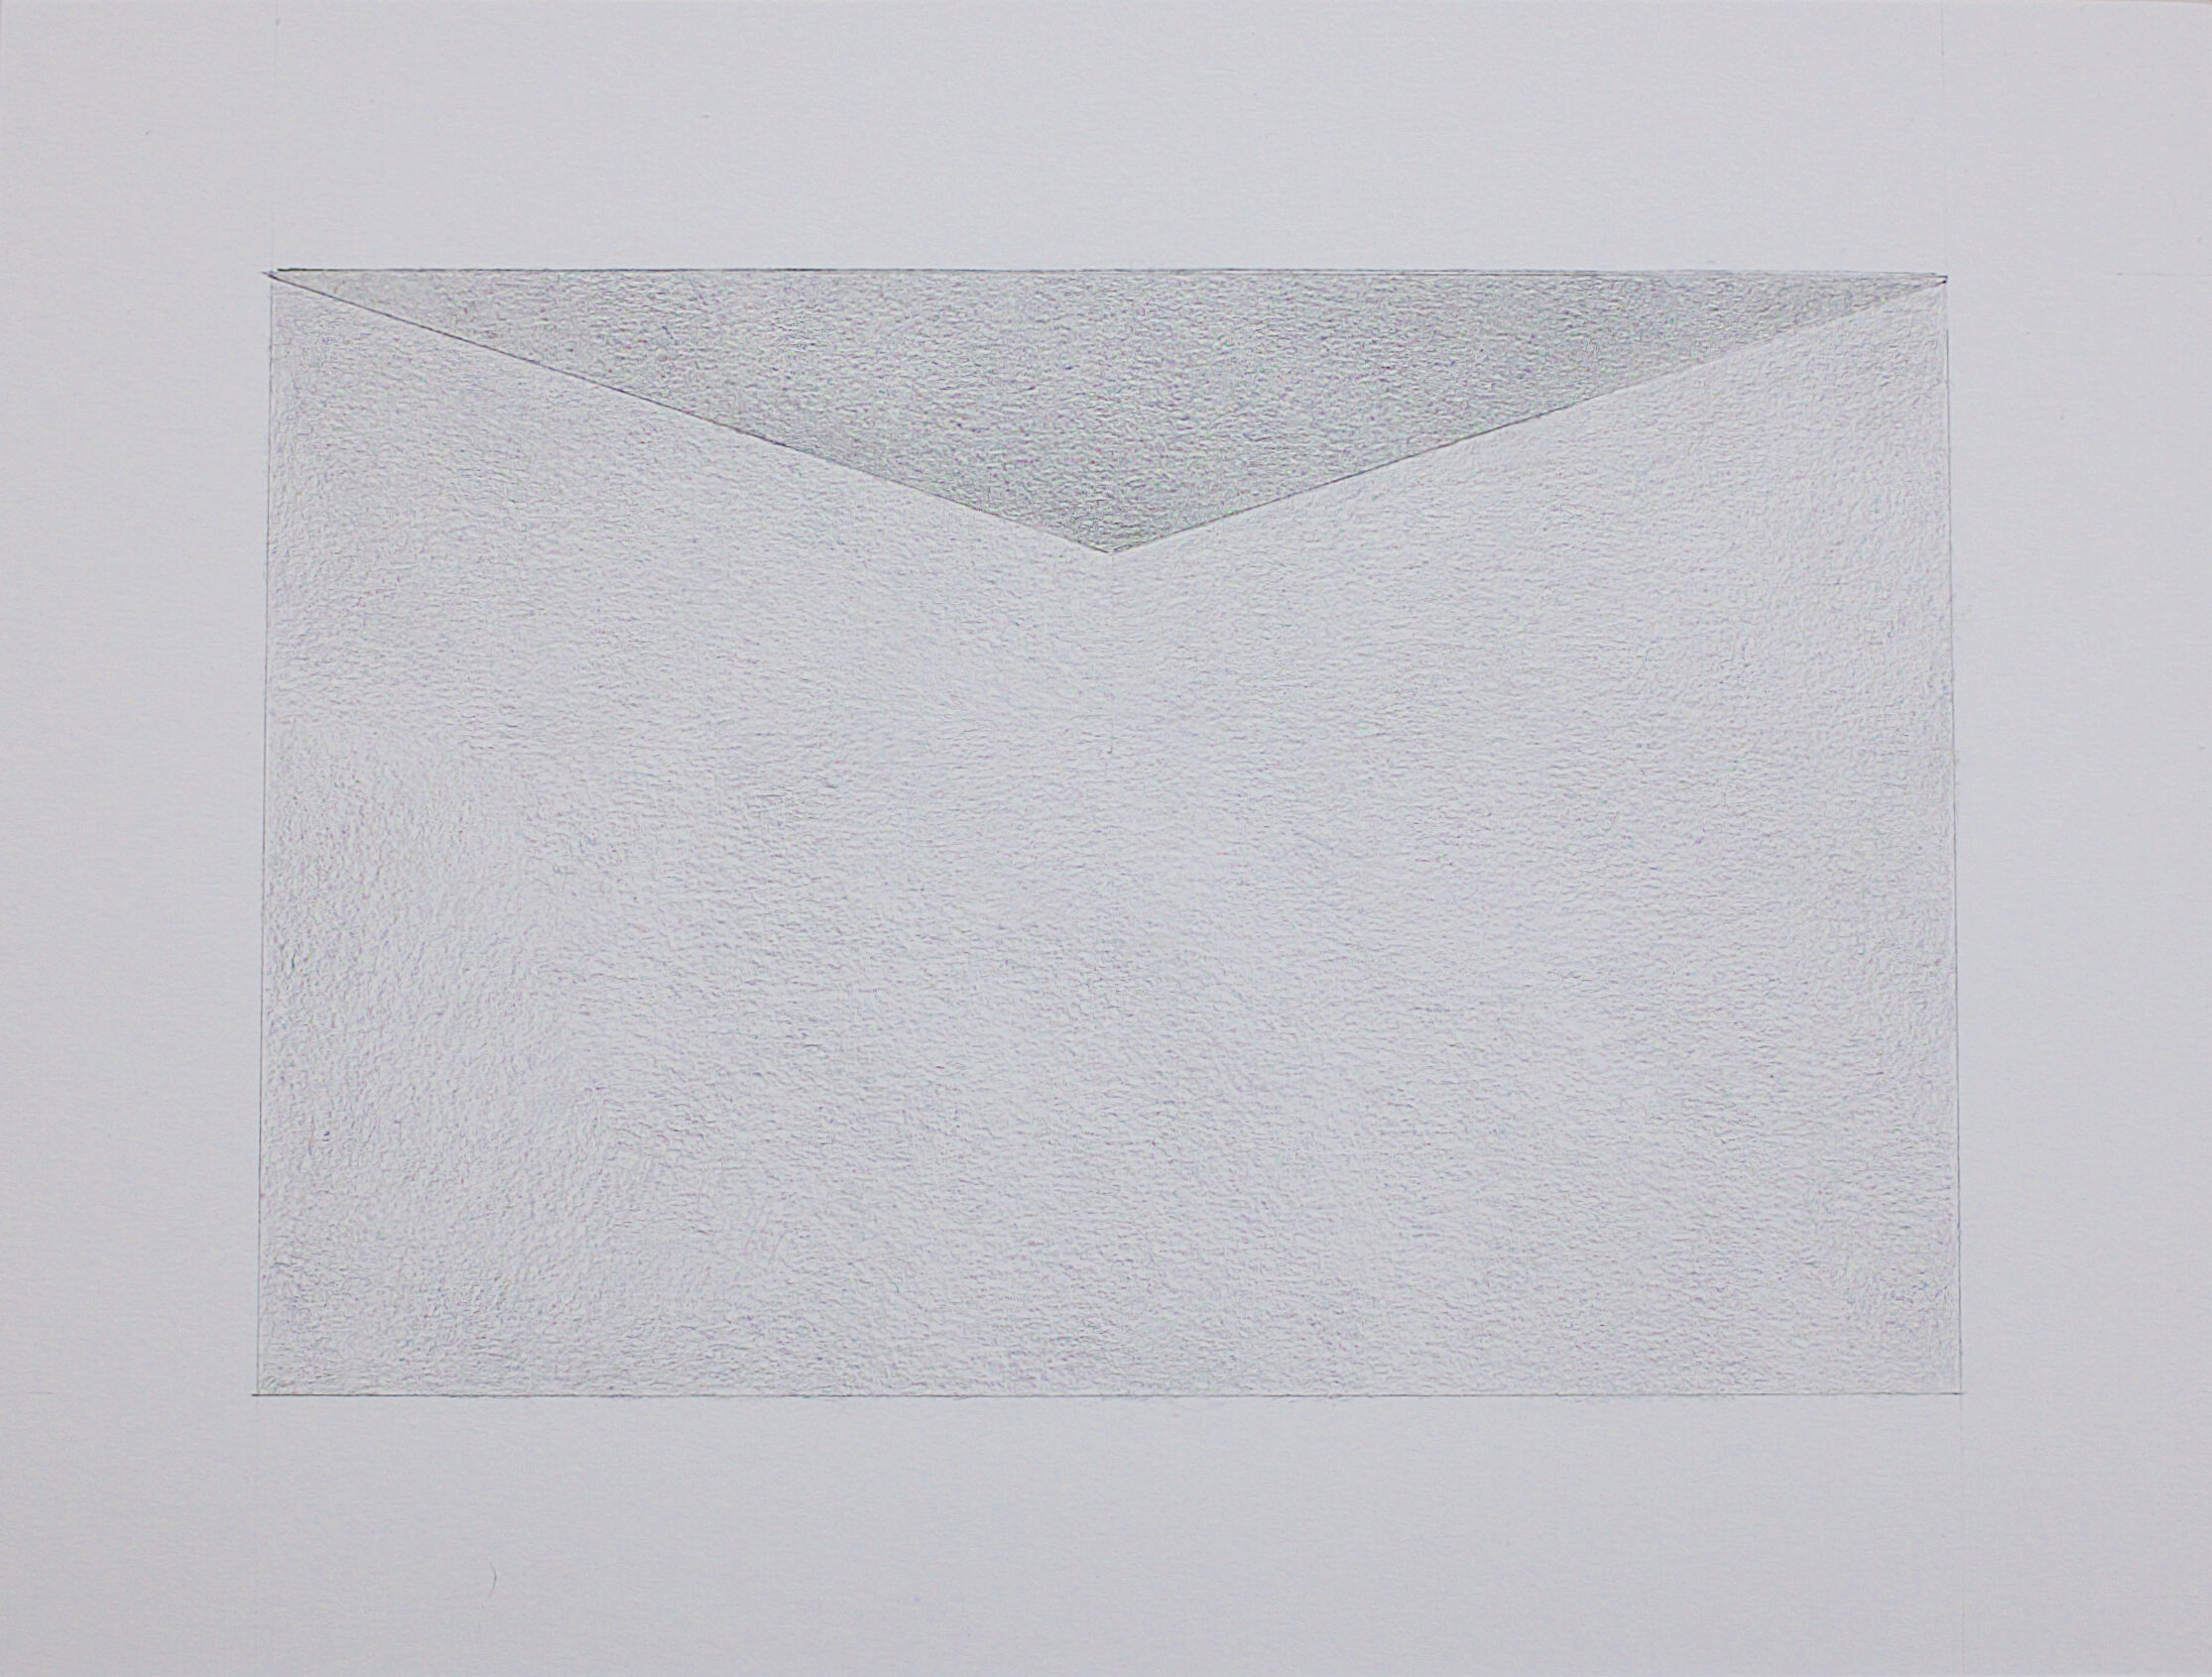  Zeichnung Nr. G03/2021 - 18 x 12 cm  - Bleistift auf Papier - im Passepartout 